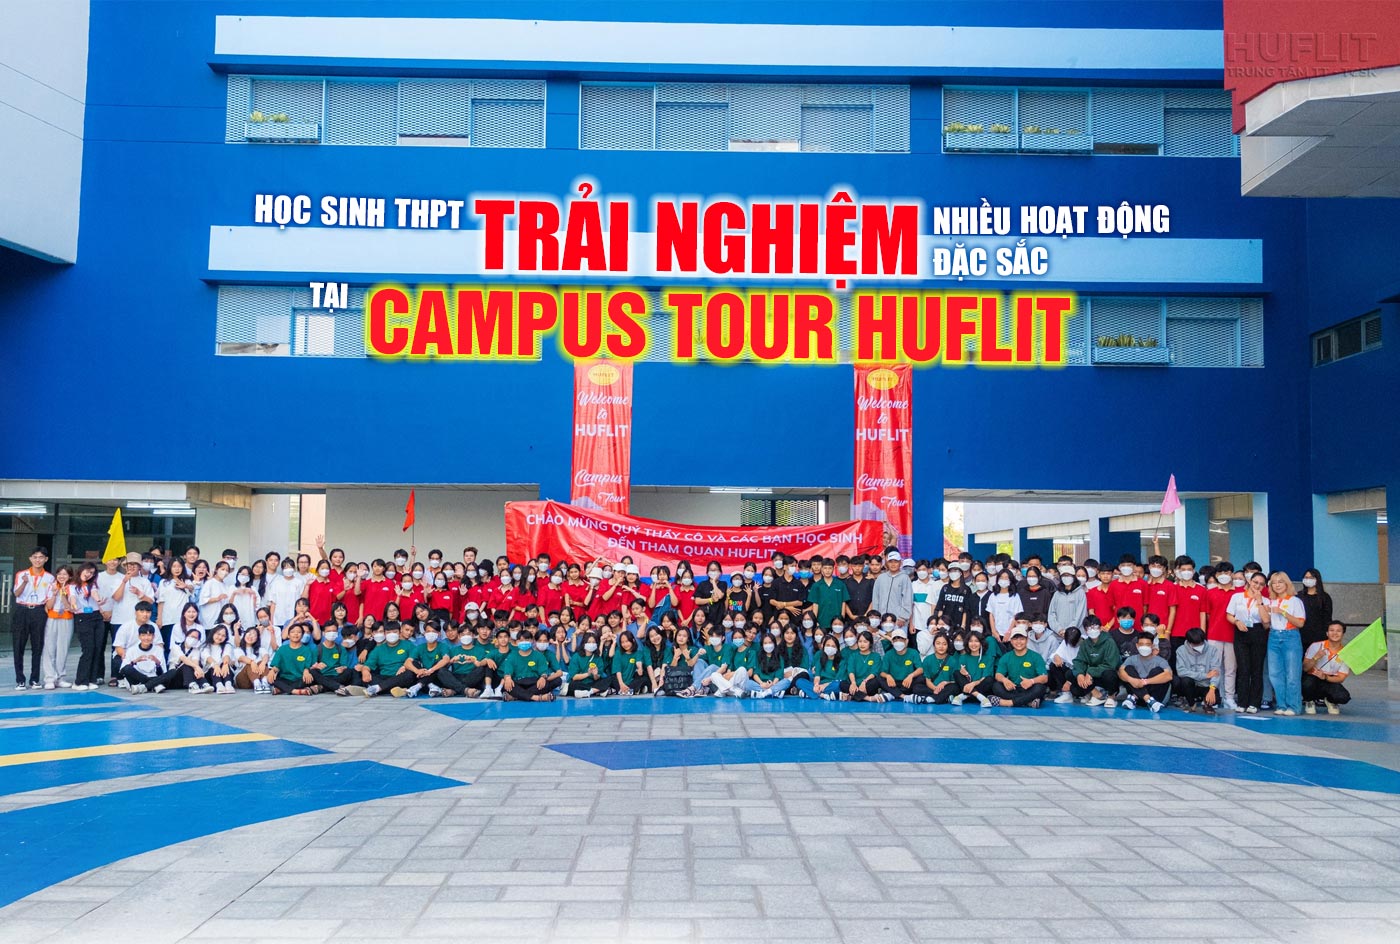 Học sinh THPT trải nghiệm nhiều hoạt động đặc sắc tại Campus Tour HUFLIT - Ảnh 1